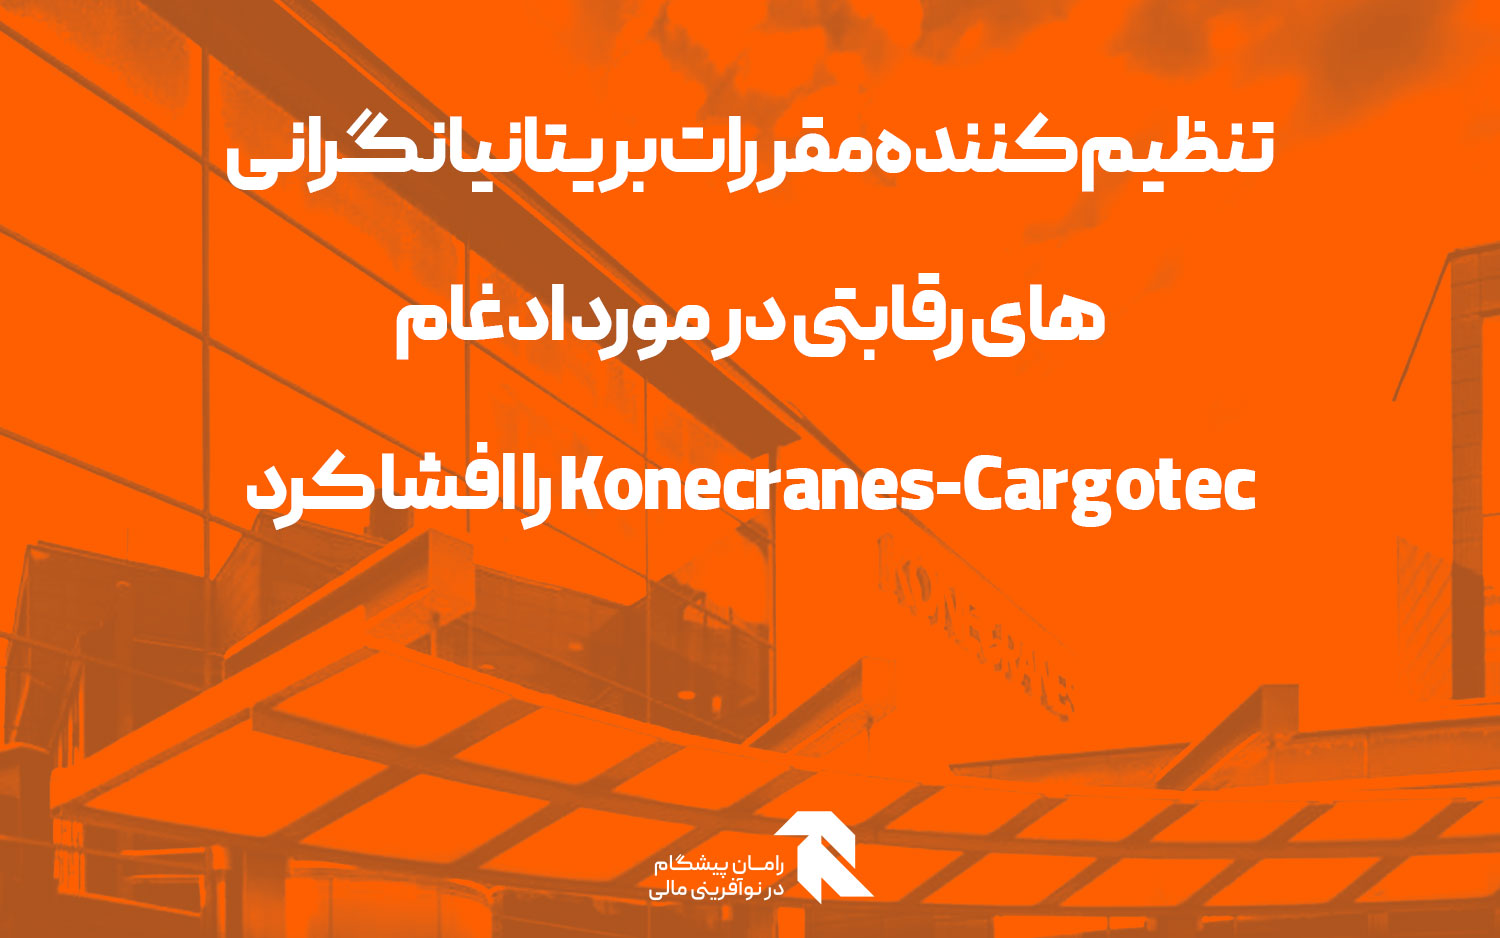 تنظیم کننده مقررات بریتانیا نگرانی های رقابتی در مورد ادغام Konecranes-Cargotec را افشا کرد